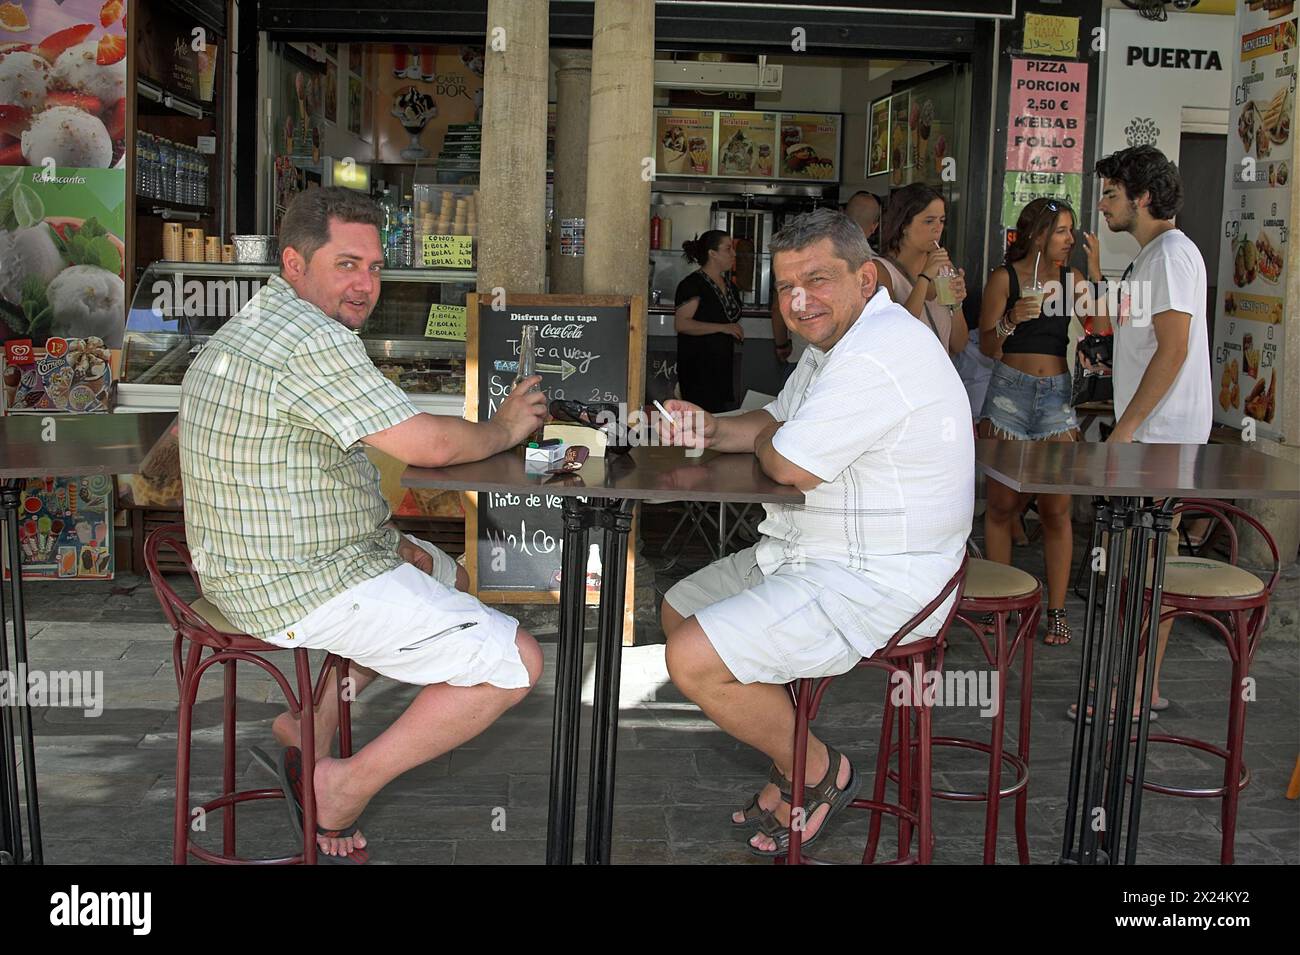 Sevilla, Spanien, España, Spanien; zwei Männer sitzen an einem Tisch in einer Bar im Freien; zwei Männer sitzen an einem Tisch in einer Bar im Freien Stockfoto